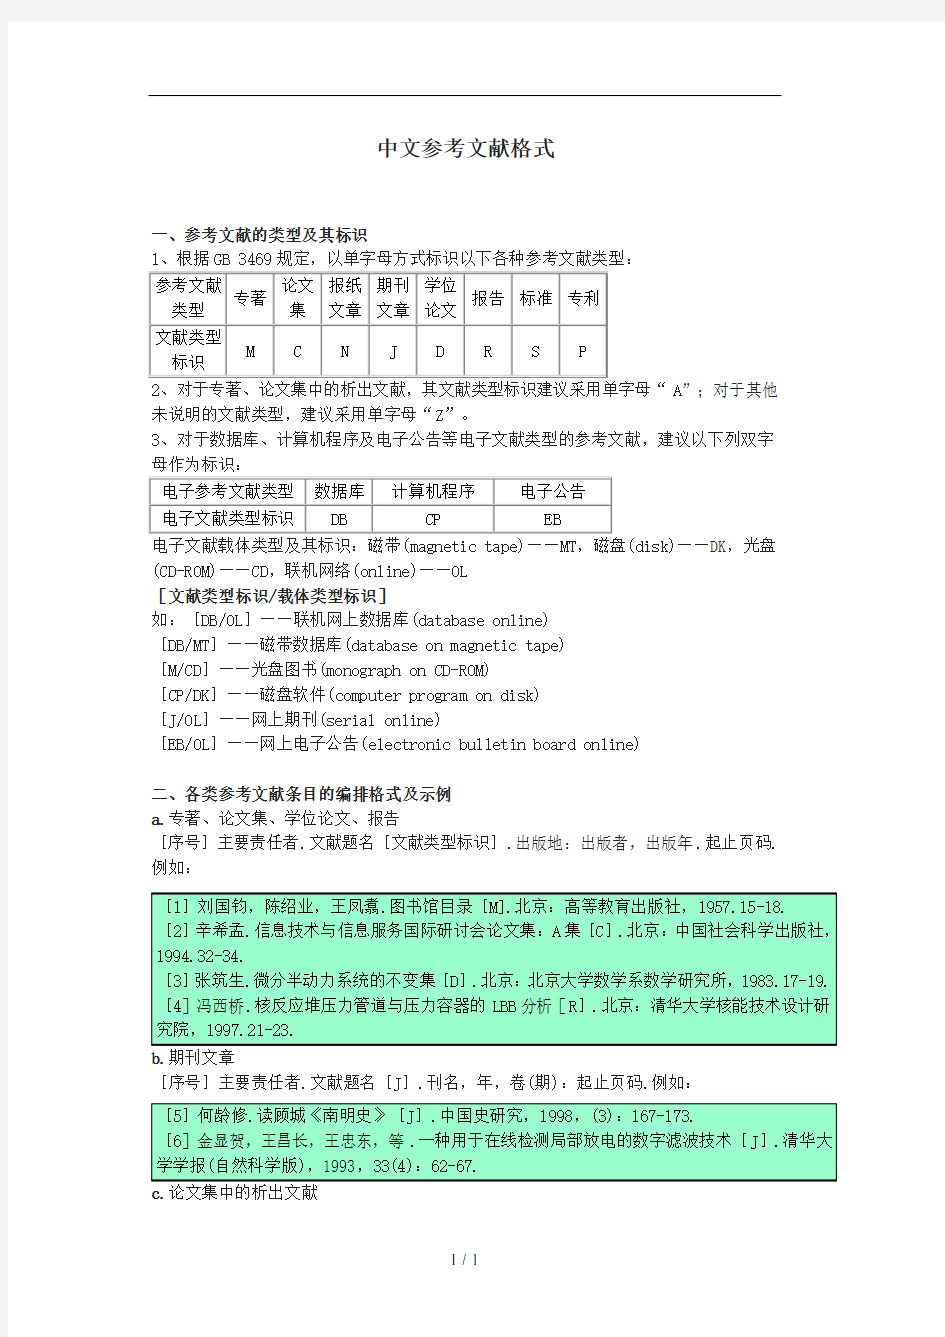 中文参考文献格